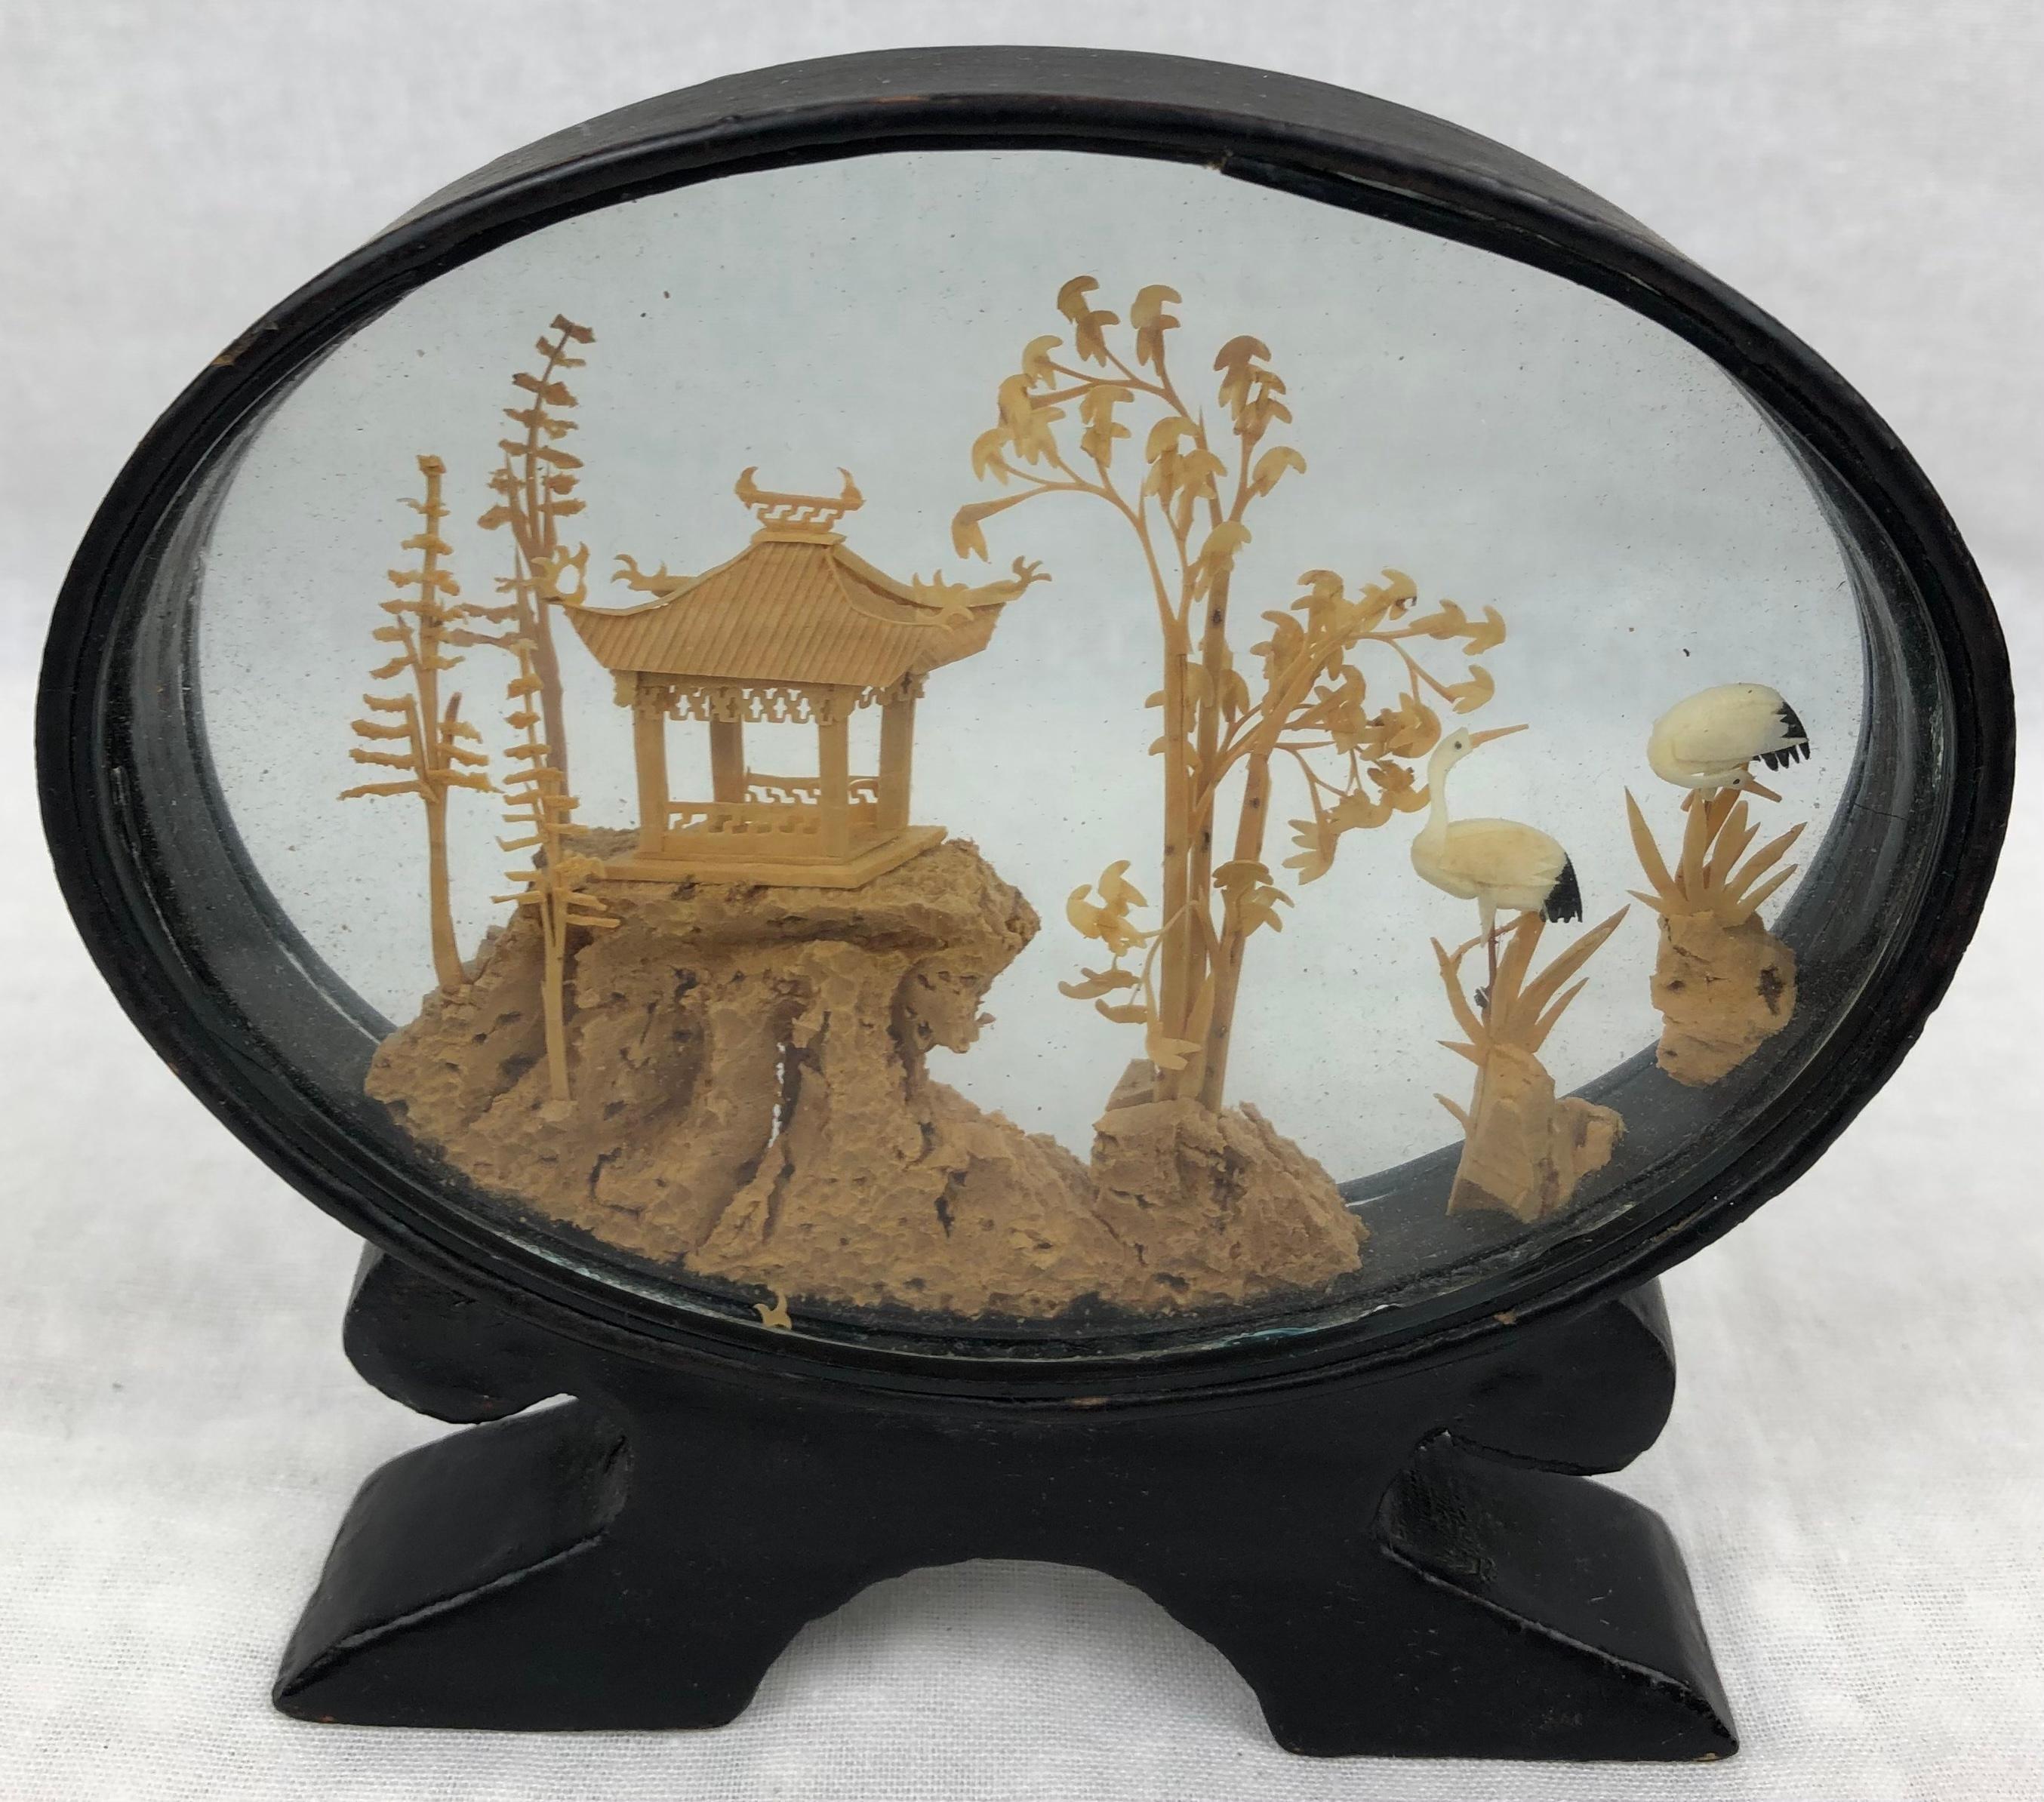 Magnifique diorama ovale en liège chinois du 20ème siècle.
Décoration finement sculptée dans un coffret en verre et une base laquée noire.
Vue d'un paysage chinois, une pagode dans un jardin traditionnel avec des cigognes. 

Sculpture